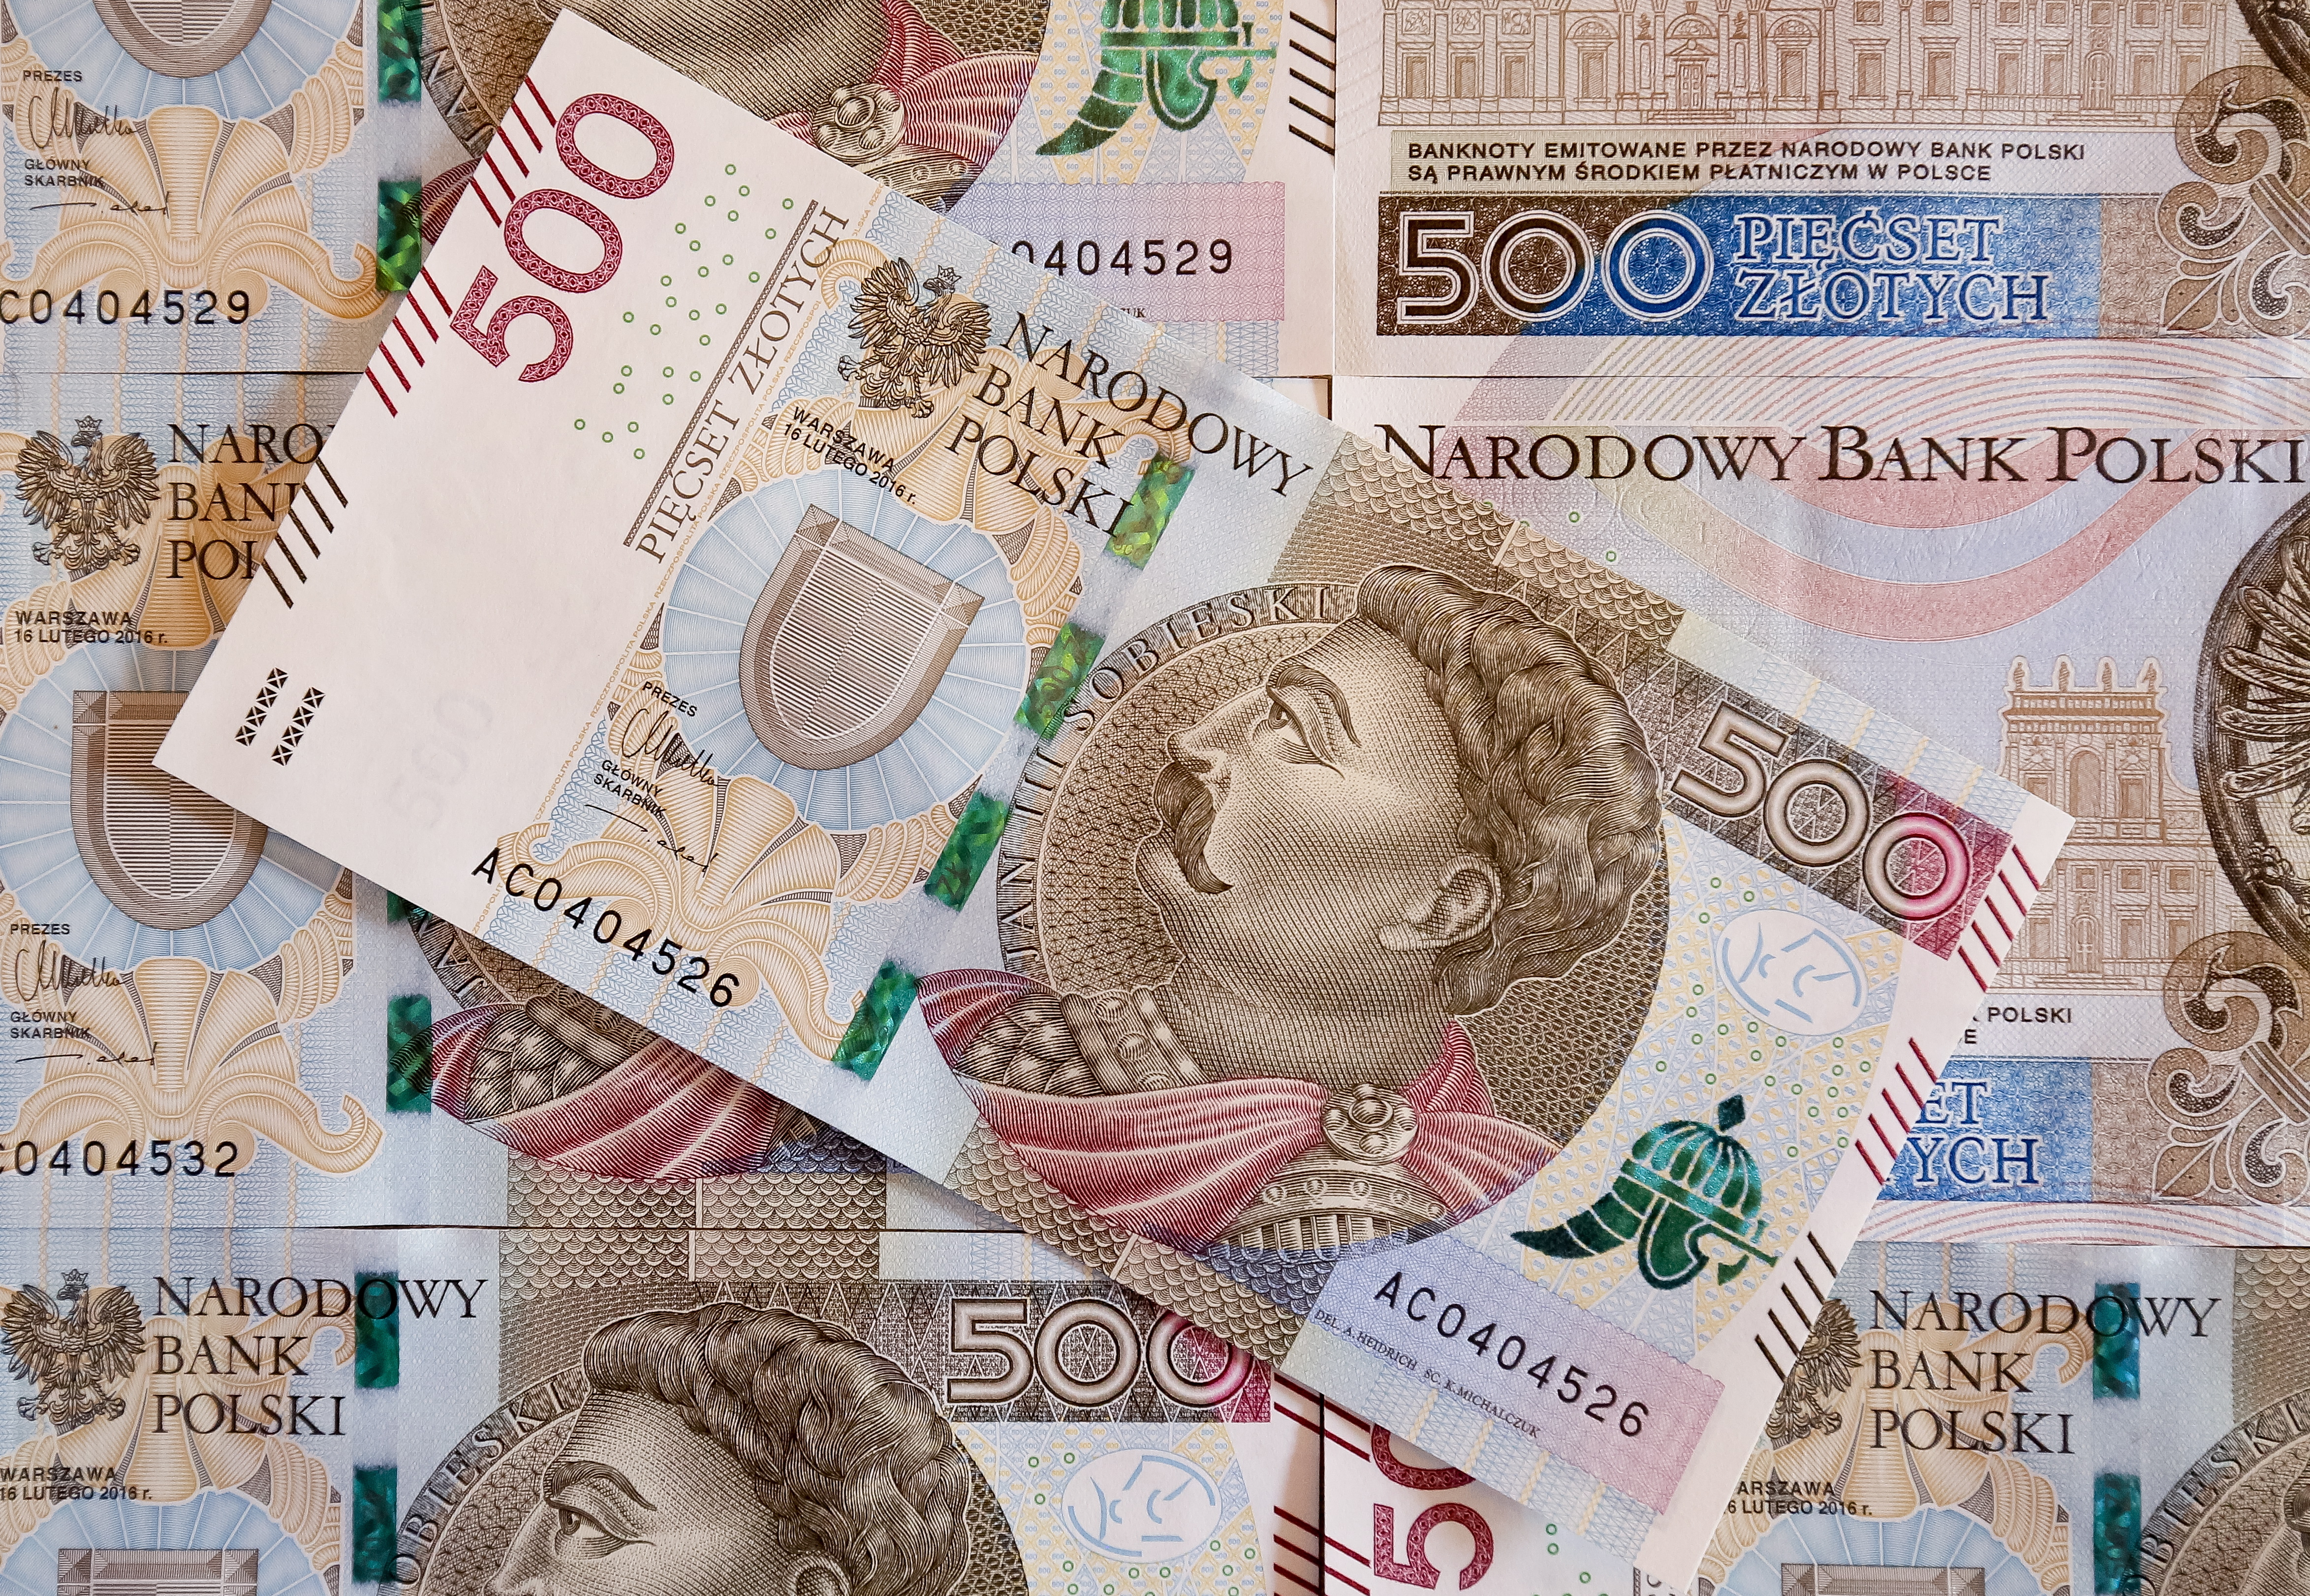 500-Zloty-Geldscheine | picture alliance / Pawel Supernak/PAP/dpa